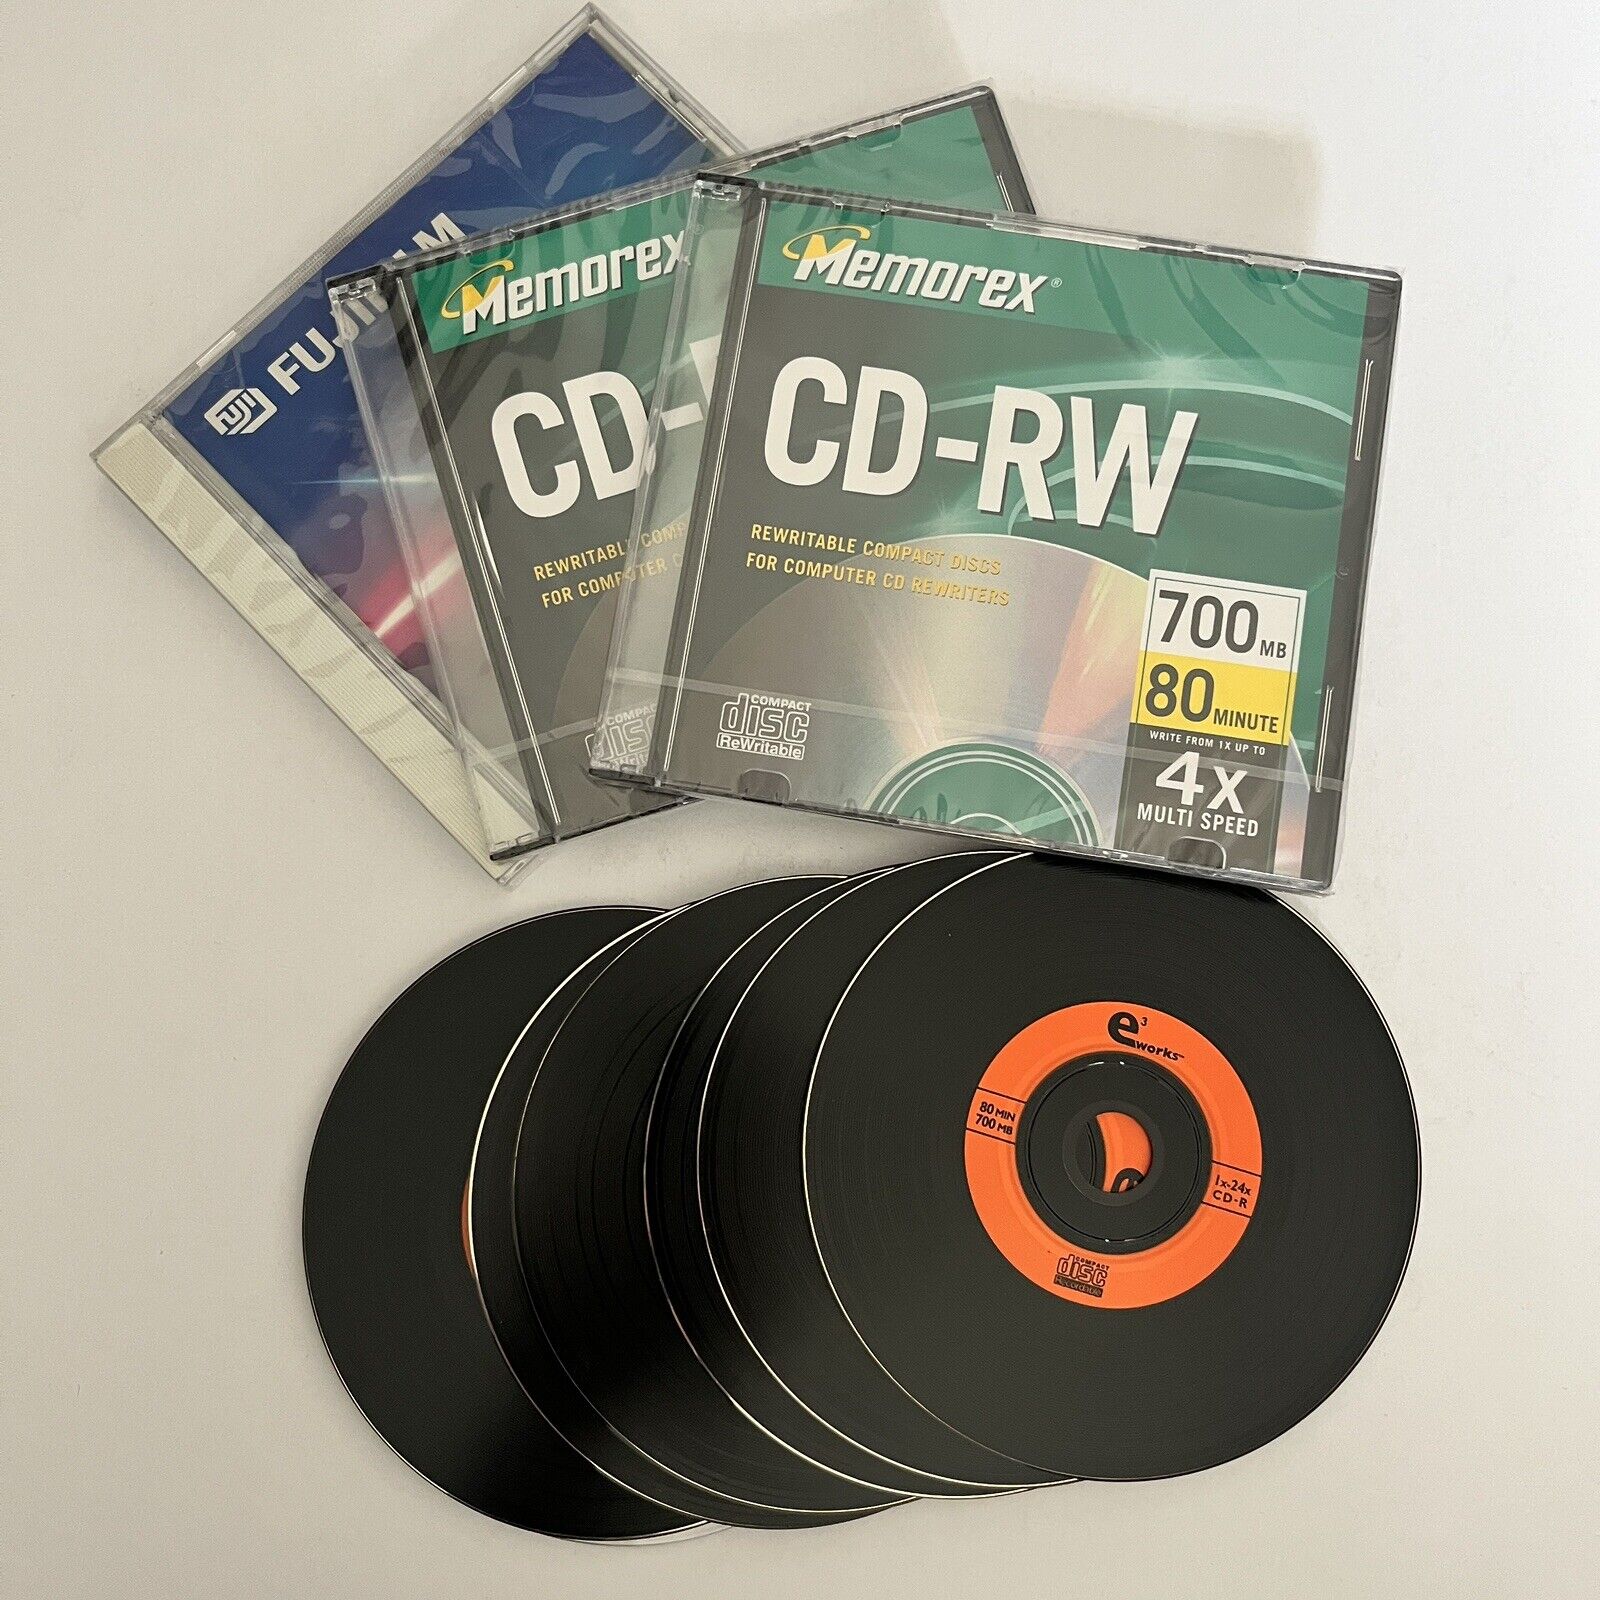 Memorex CD-RW Rewritable New (3 CDs) & eWorks Open Package (6 Black CDs) Bundle